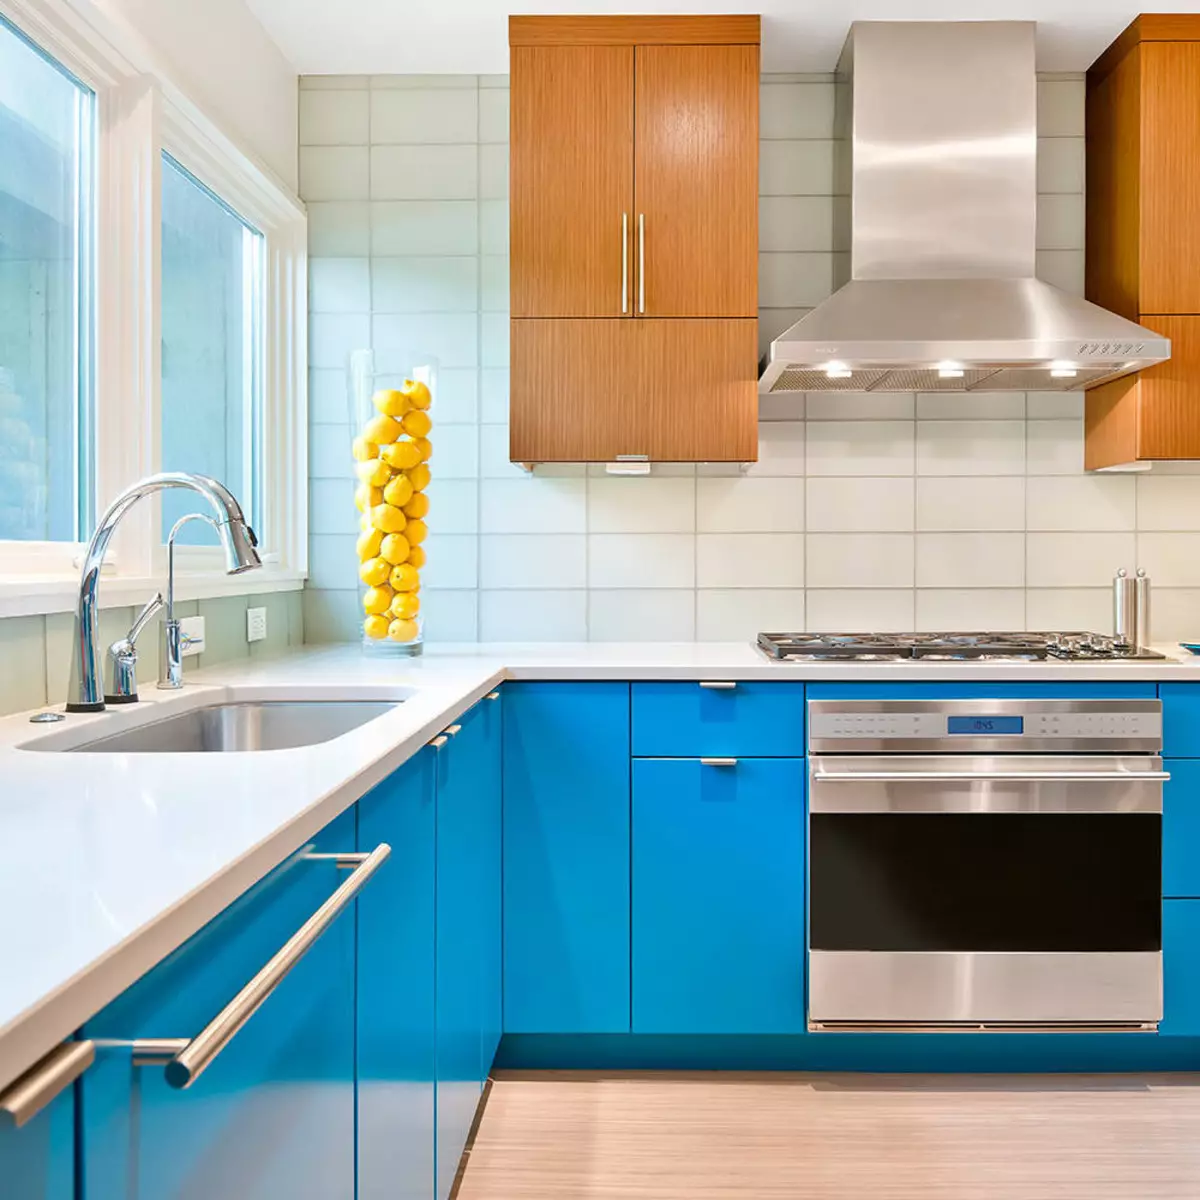 Baltā zilā virtuve (64 fotoattēli): virtuves austiņu iezīmes baltā zilā krāsā virtuves interjera dizainam, akcentiem uz sienām līdzīgām krāsām 9393_22